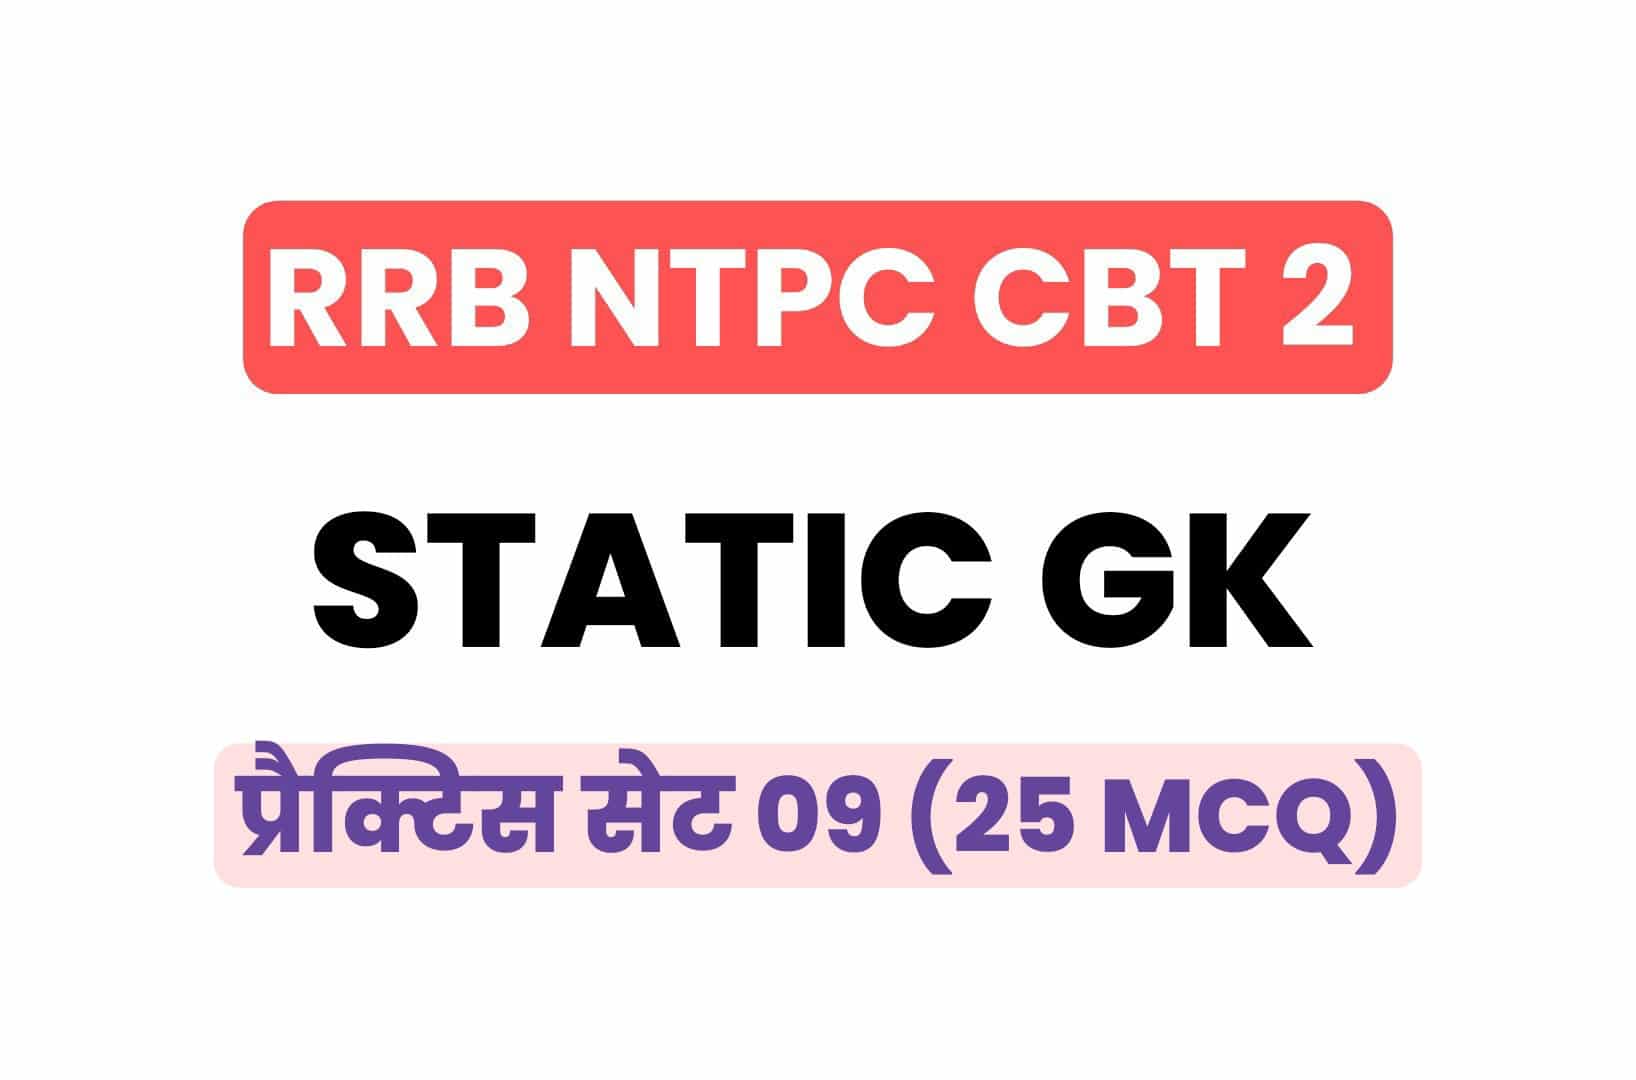 RRB NTPC CBT 2 Static GK प्रैक्टिस सेट 09: परीक्षा में पूछे इन गये महत्वपूर्ण प्रश्नों का करें अध्ययन